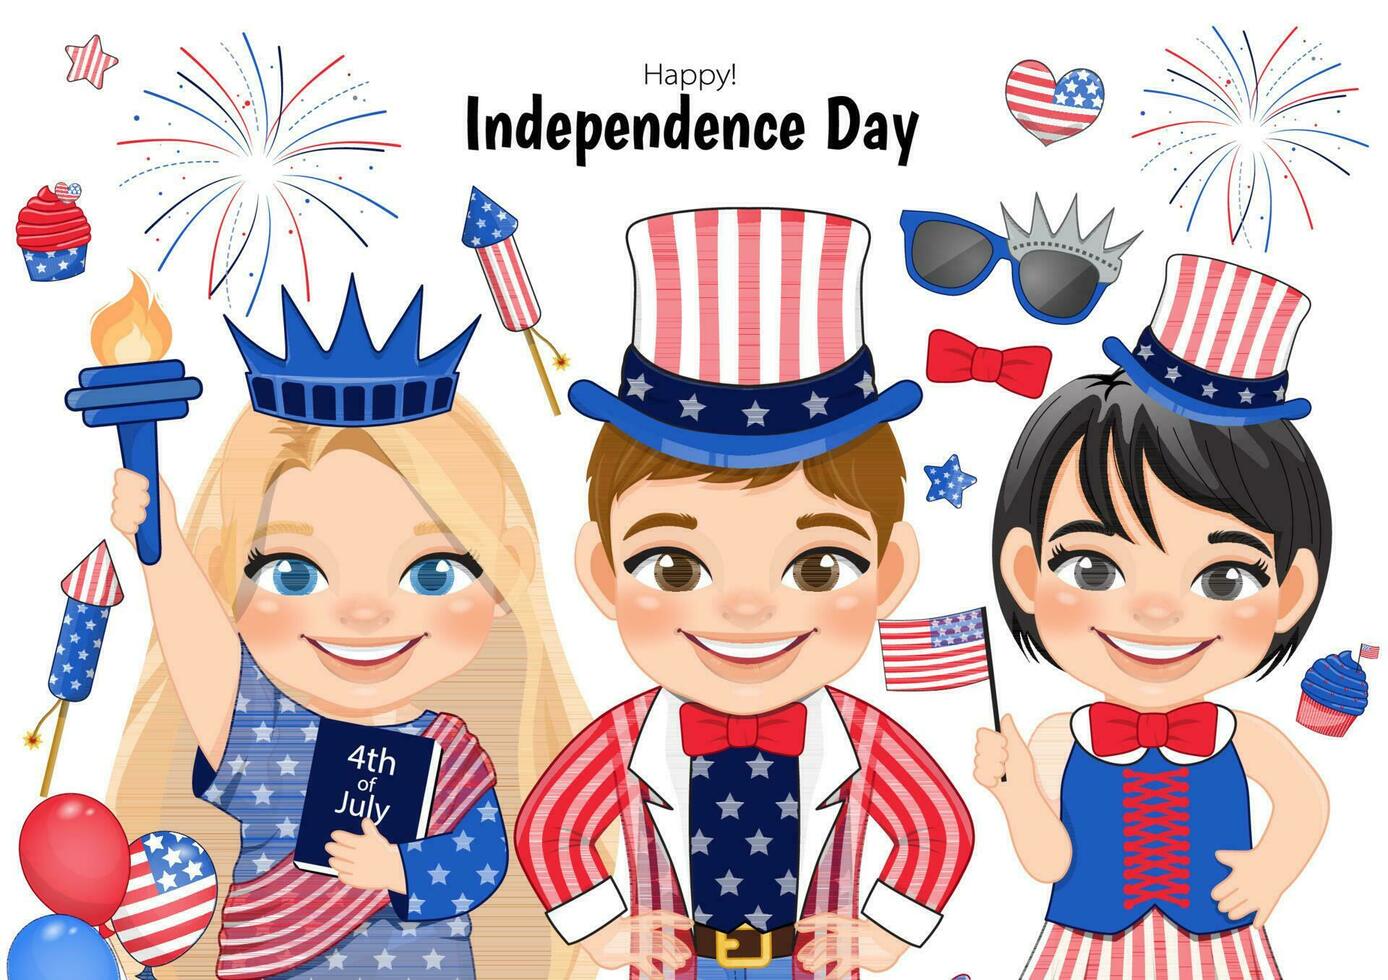 amerikanisch Kinder Porträt feiern 4 .. von Juli Unabhängigkeit Tag mit Kostüm, halten Flaggen, tragen Onkel Sam Hut, Statue von Freiheit Vektor